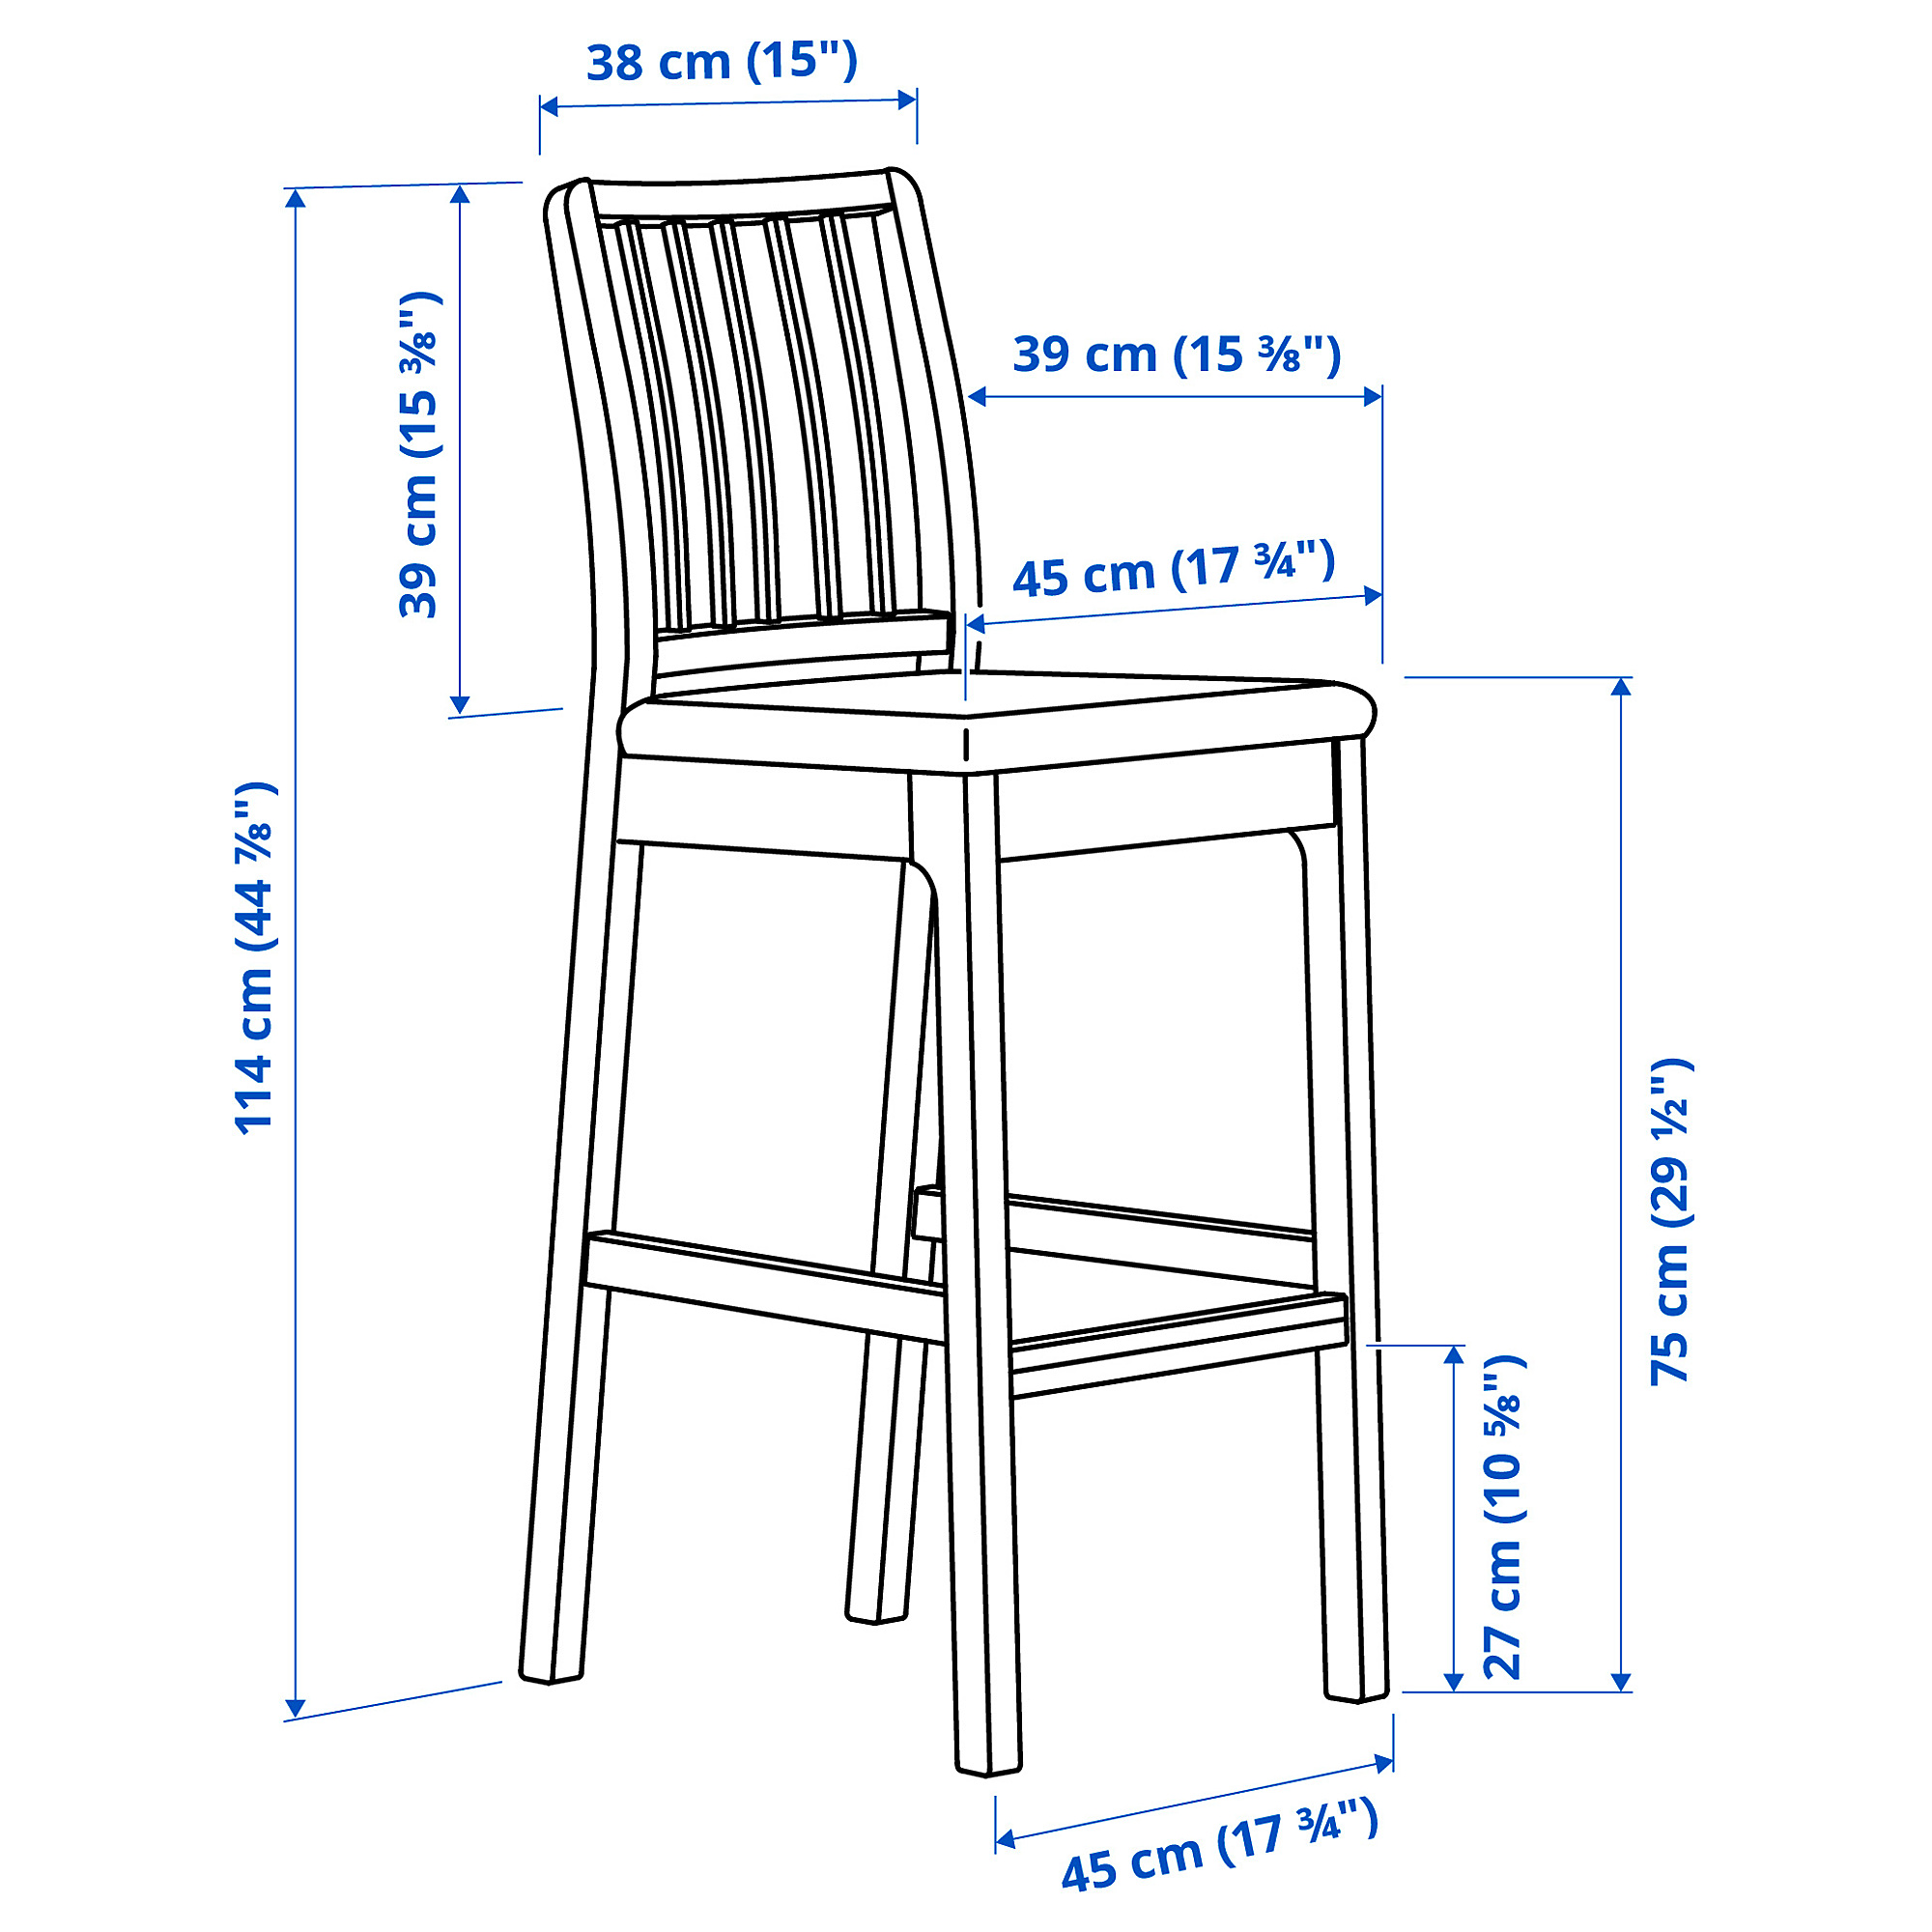 EKEDALEN/EKEDALEN bar table and 4 bar stools